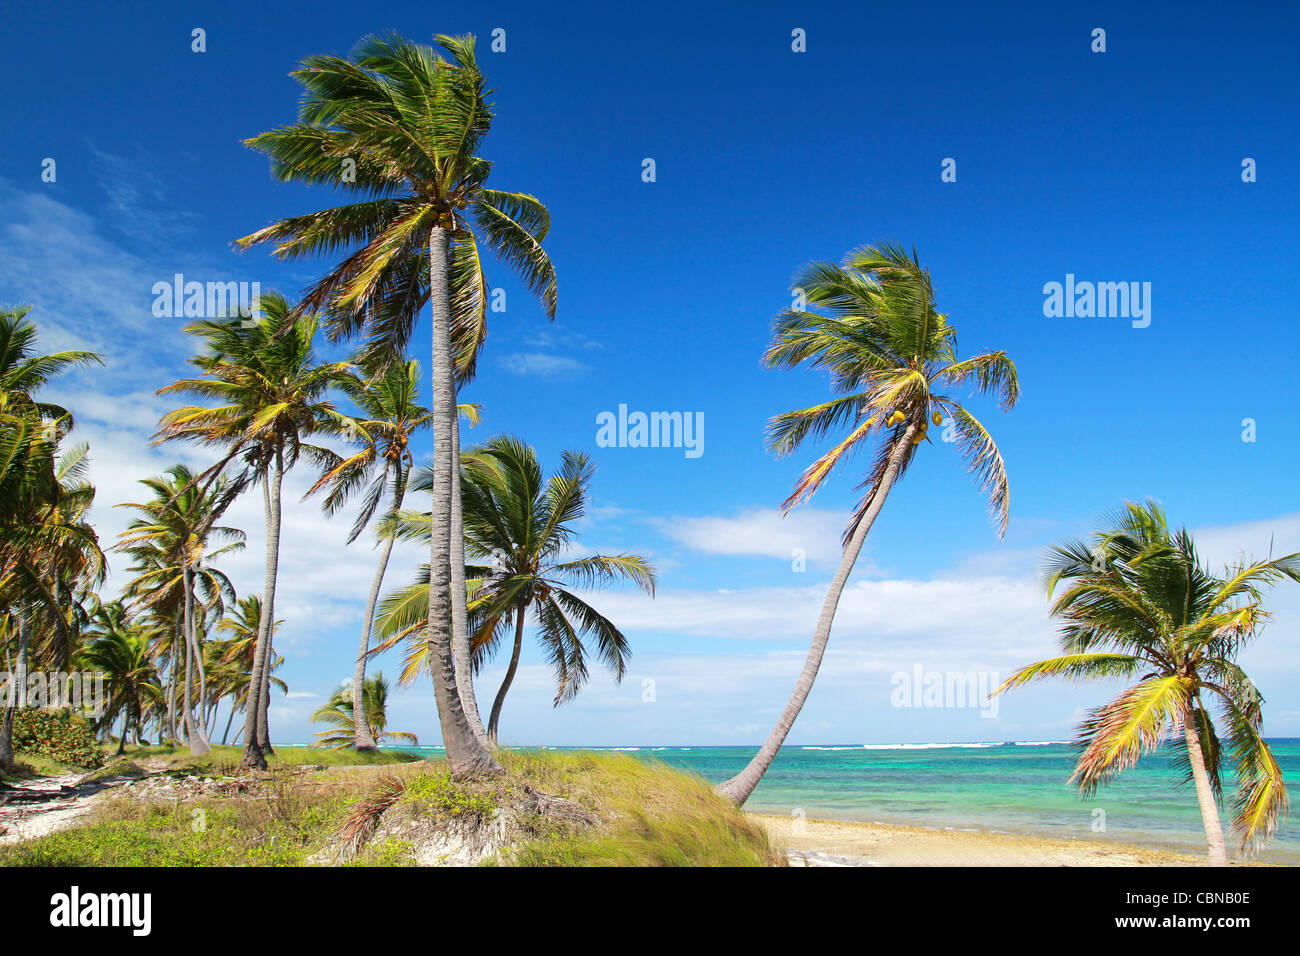 Palmiers sur la plage tropicale, mer des Caraïbes Banque D'Images